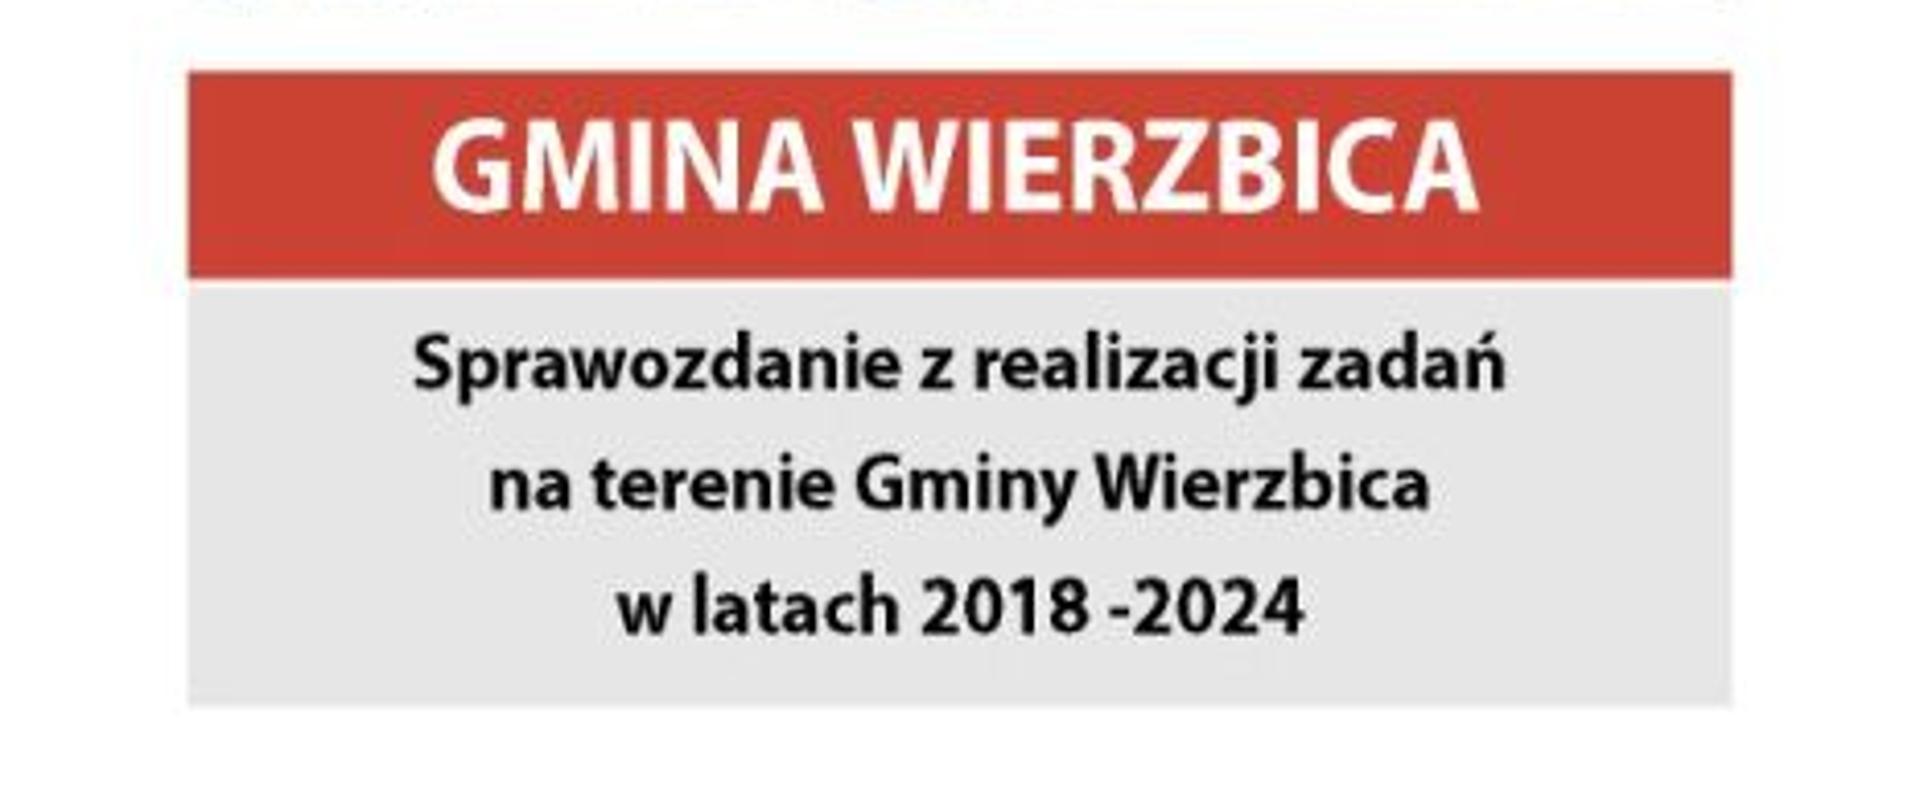 Na zdjęciu napisane jest Gmina Wierzbica sprawozdanie z realizacji zadań na terenie Gminy Wierzbica w latach 2018-2024.